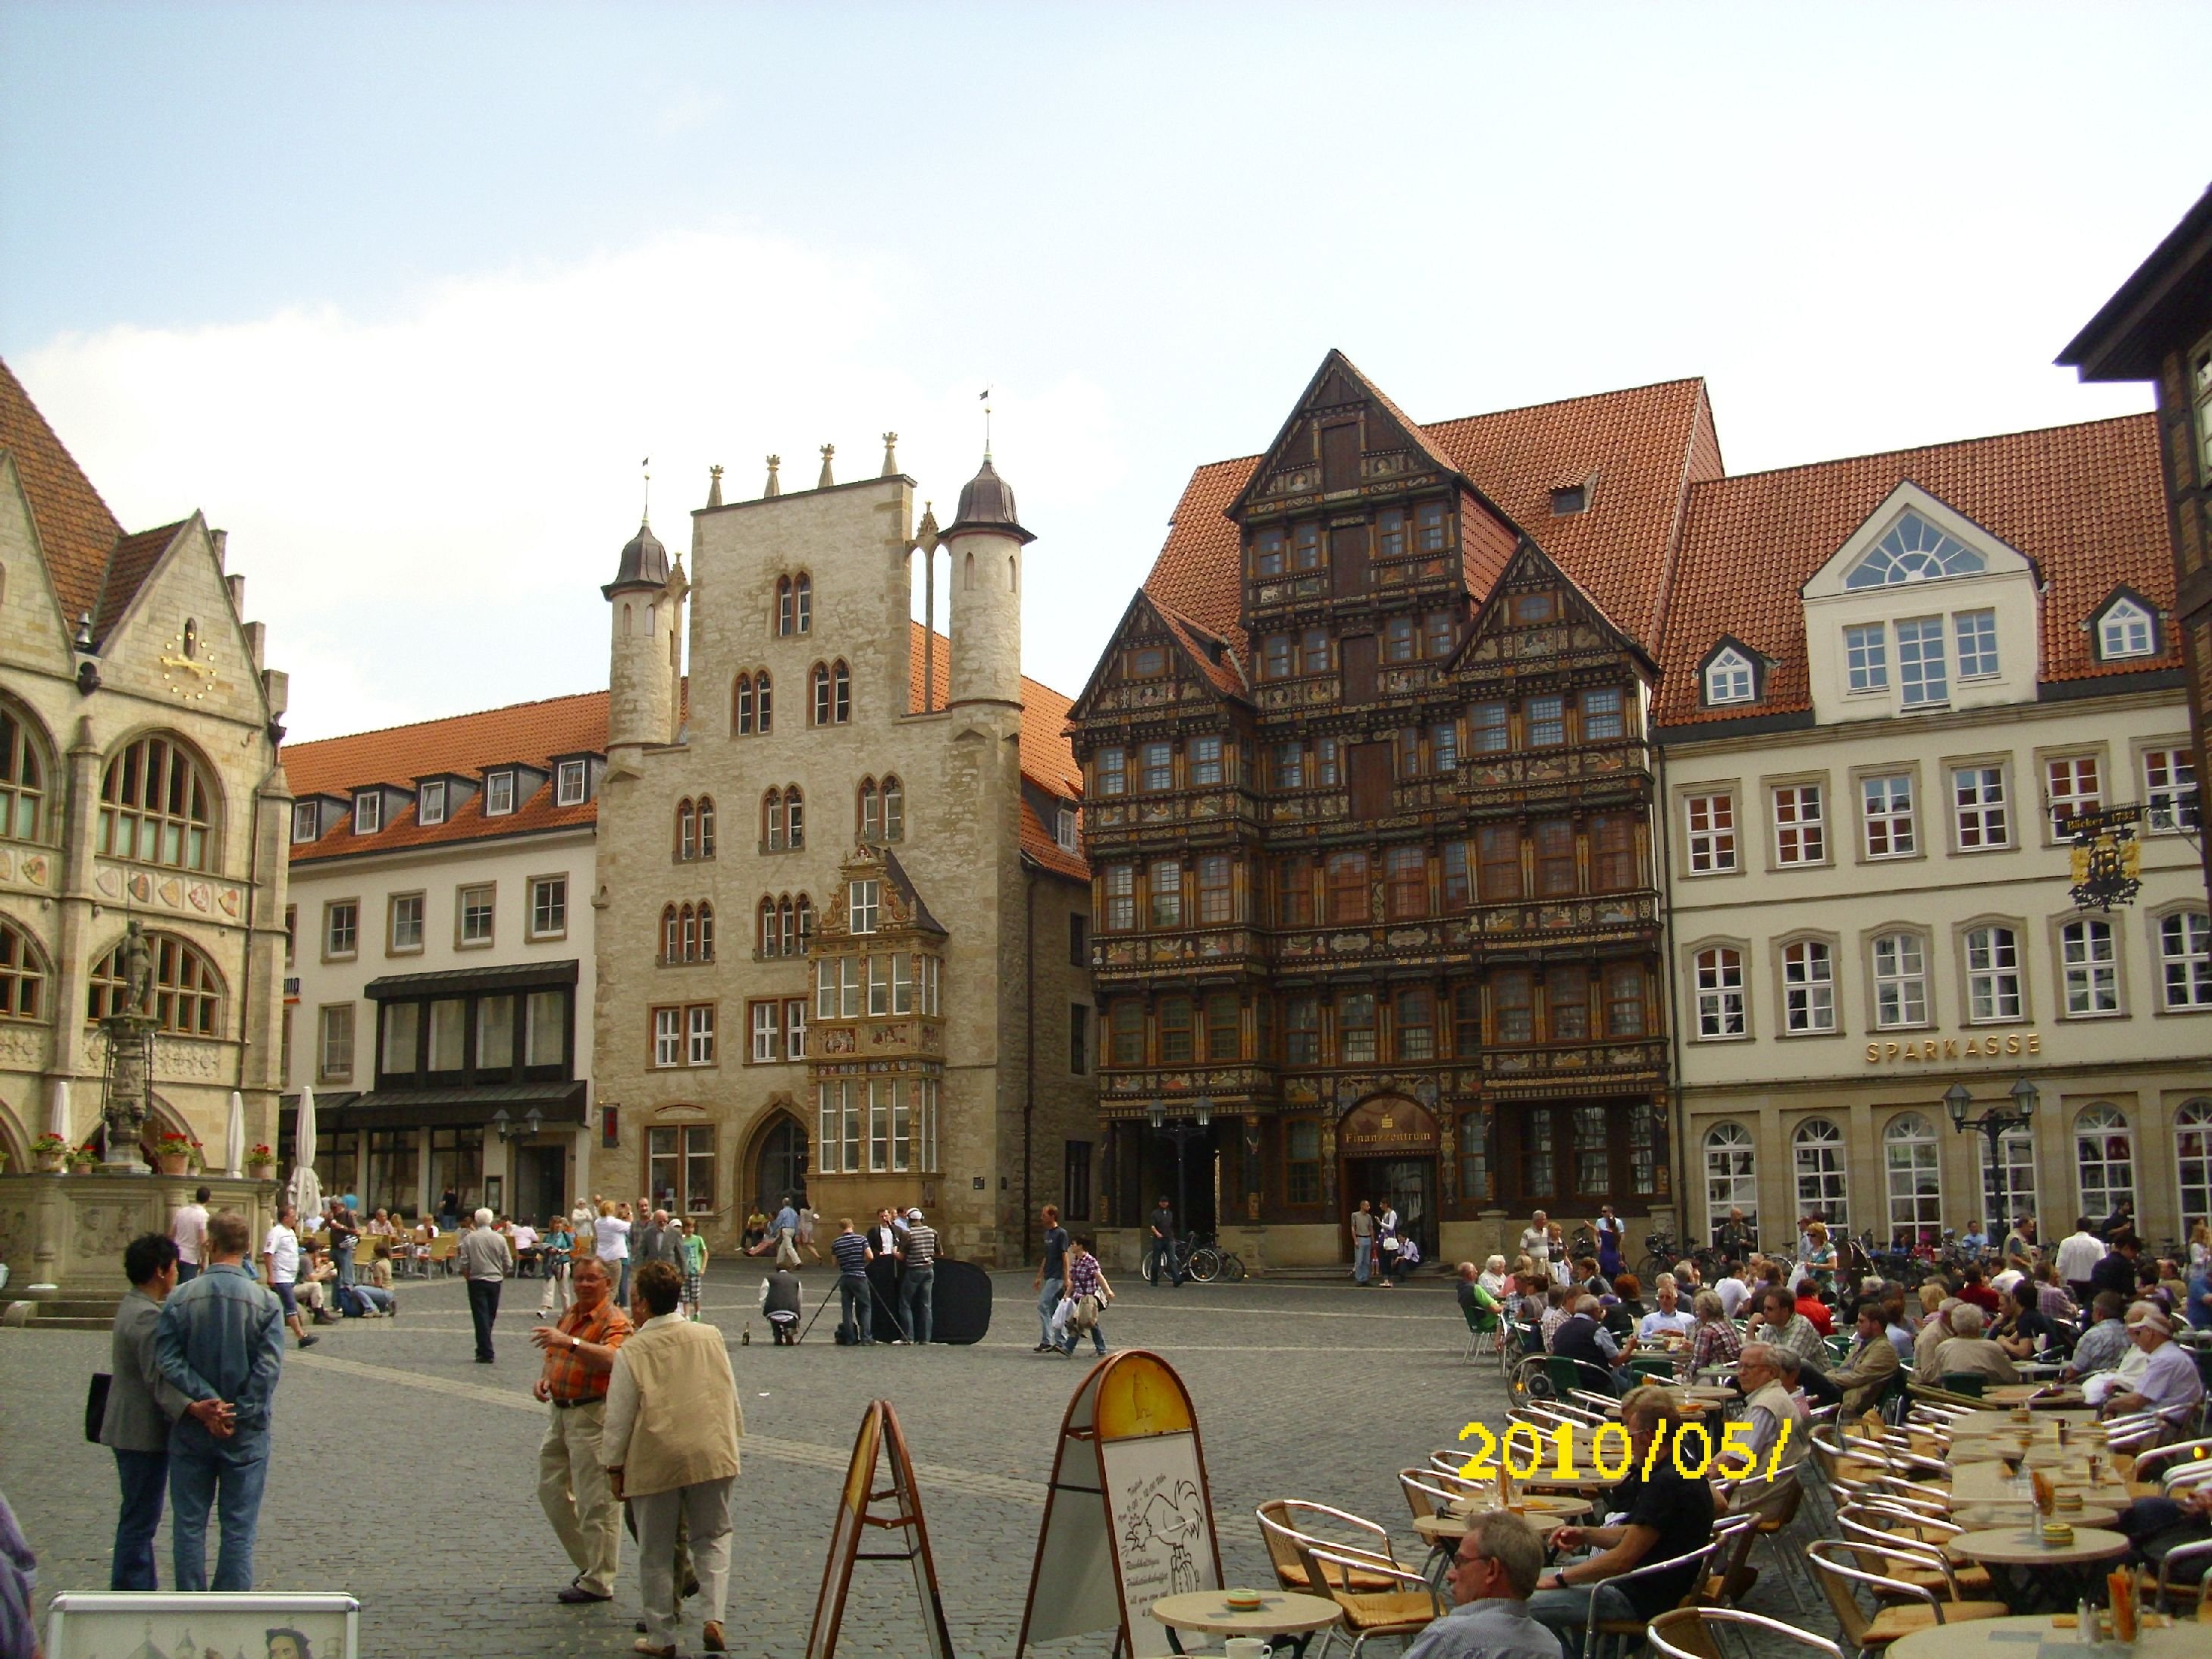 Farbfoto: Der Historische Marktplatz in Hildesheim im Mai 2010. Links das Hildesheimer Rathaus. Davor der Rolandbrunnen. Fotograf: Kim Hartley.